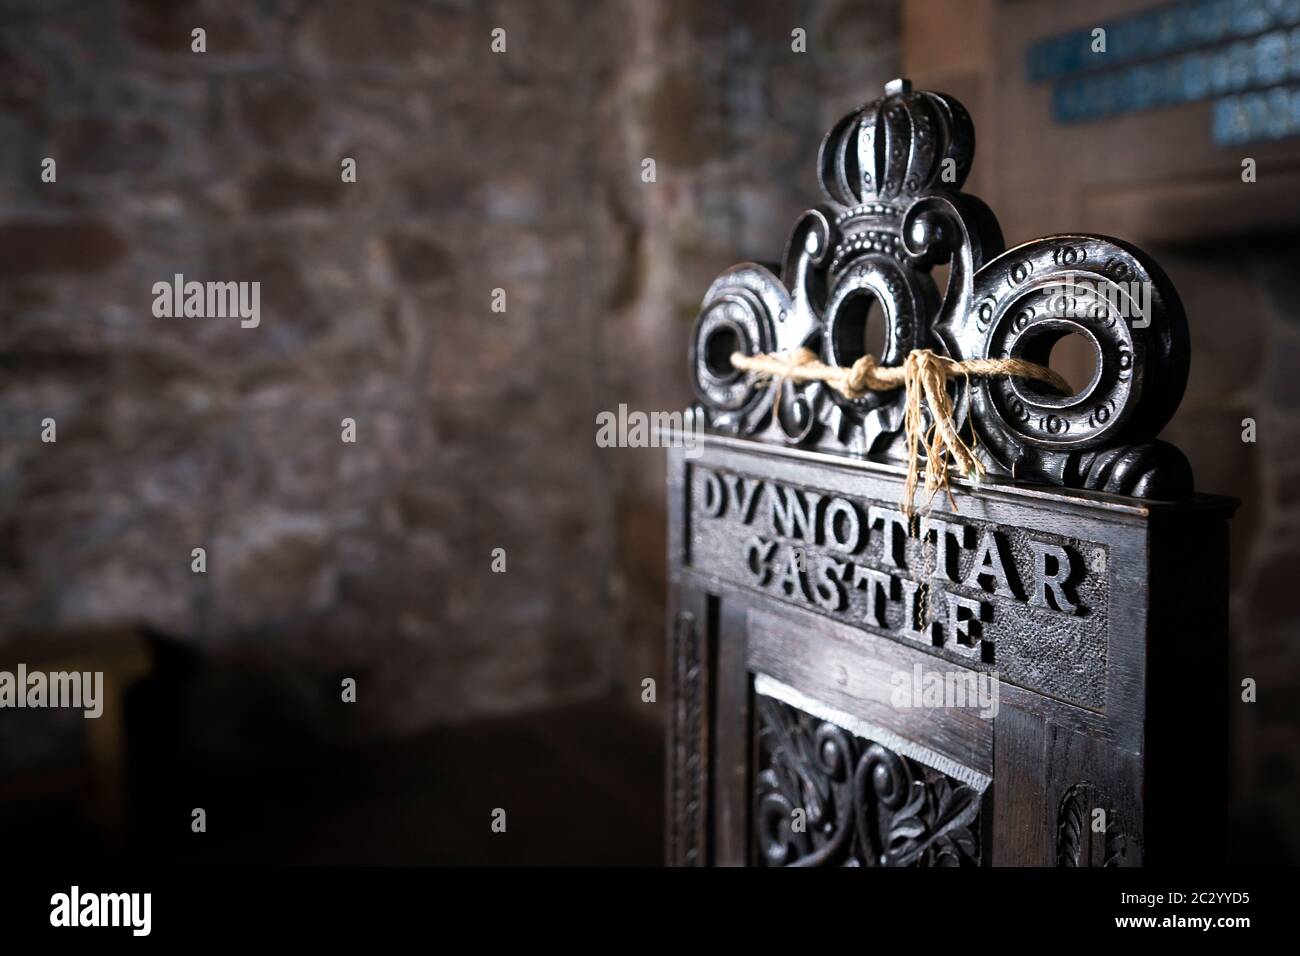 Silla de madera ornamentada con tallas de flores y pergamino y una corona en lo alto del trono con letras Dunnottar Castle, Escocia, Reino Unido Foto de stock